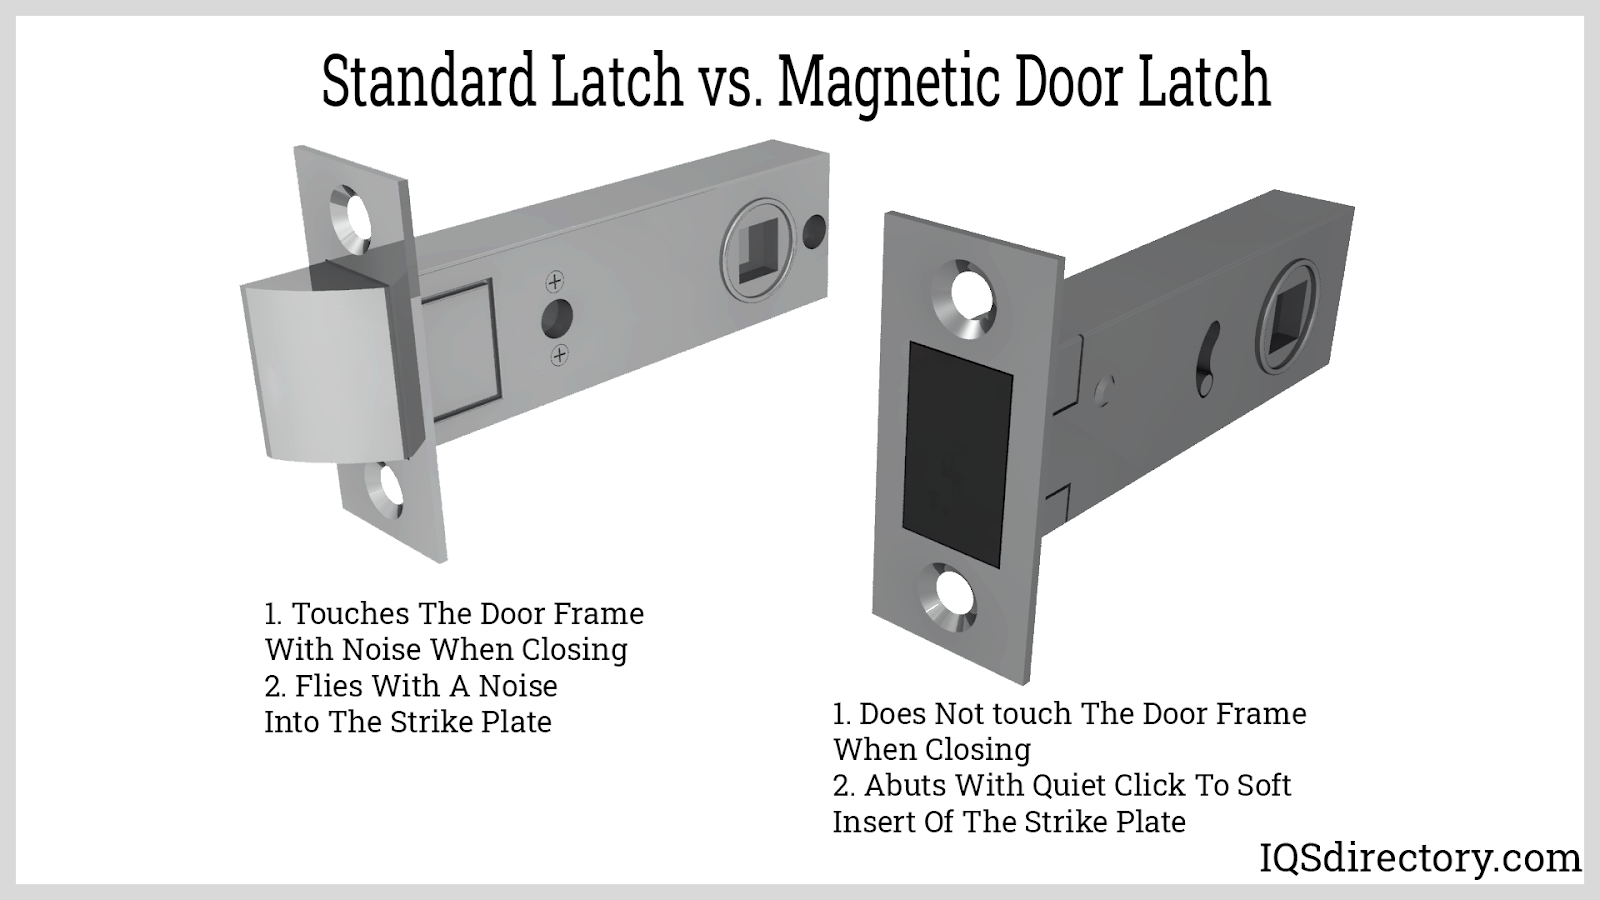 Standard Latch vs. Magnetic Door Latch